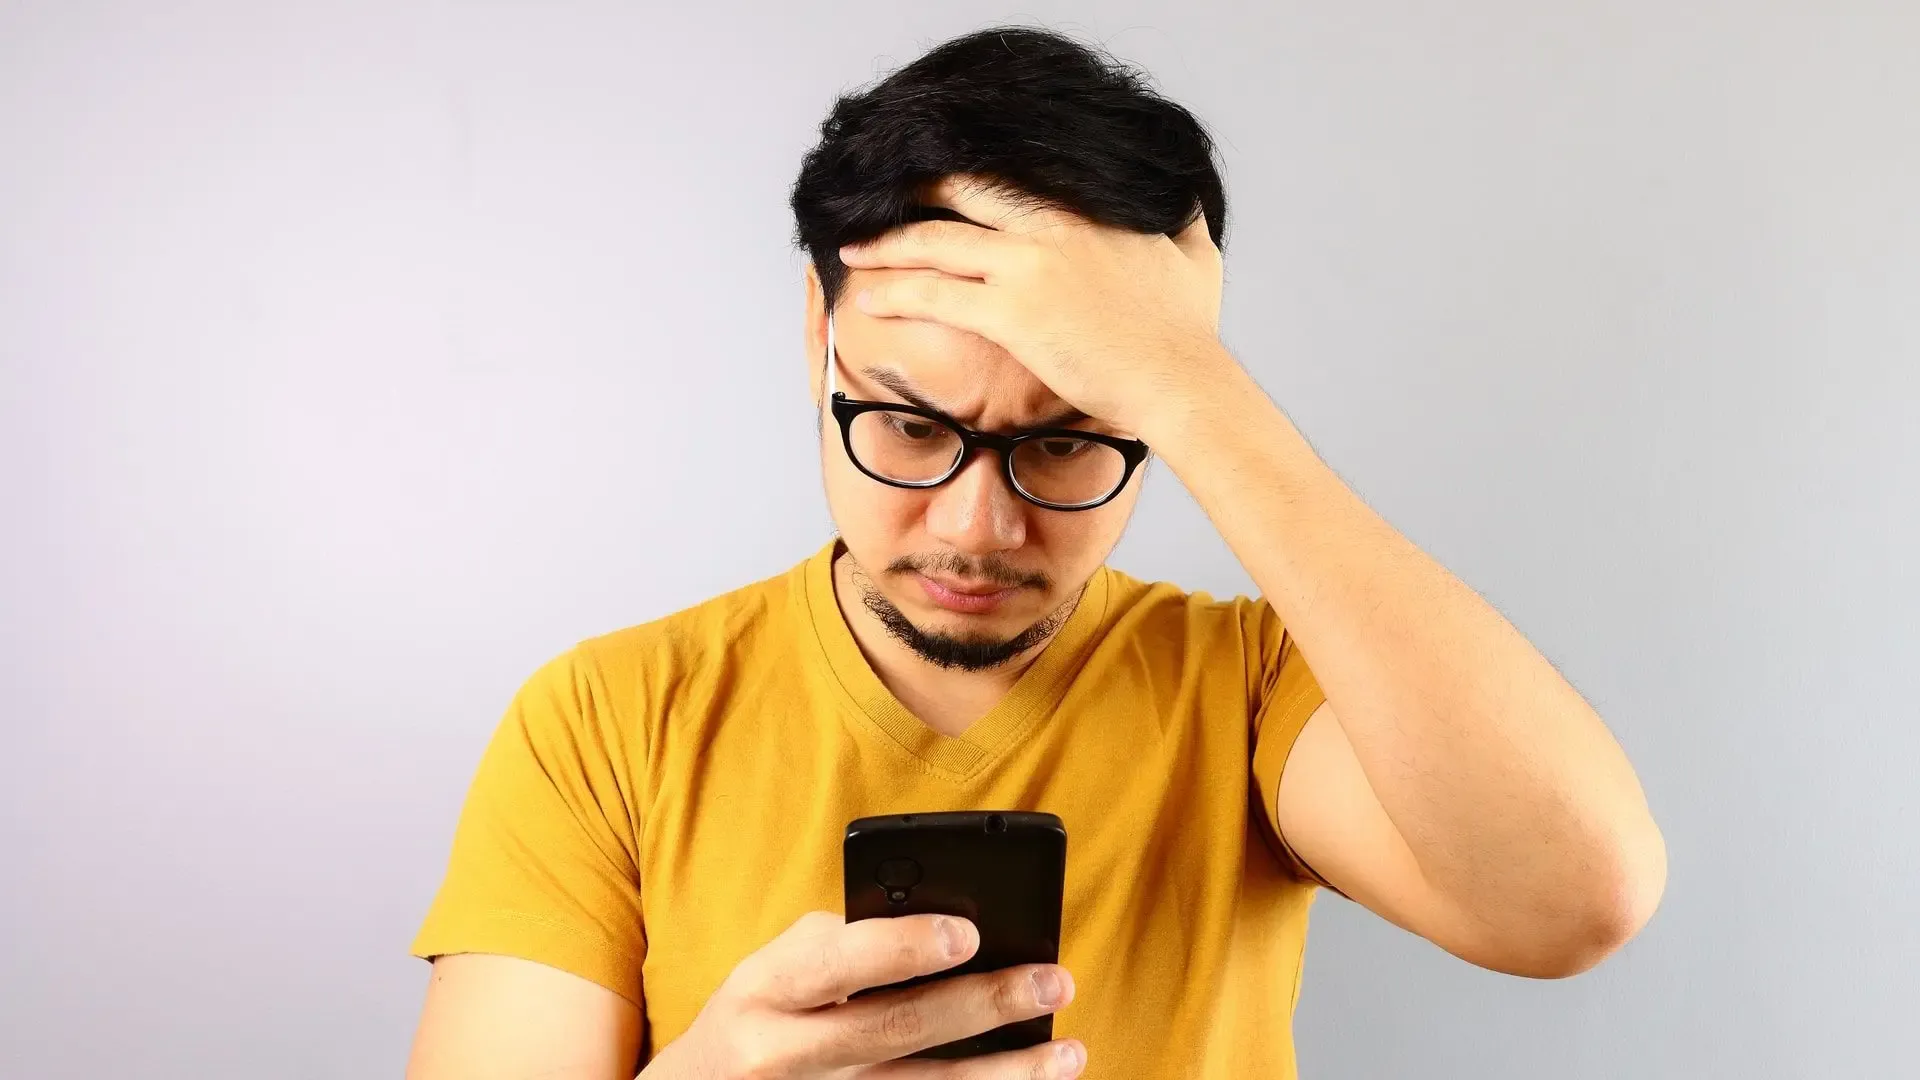 Homem com a mão na cabeça e aparência de preocupado mexendo no celular